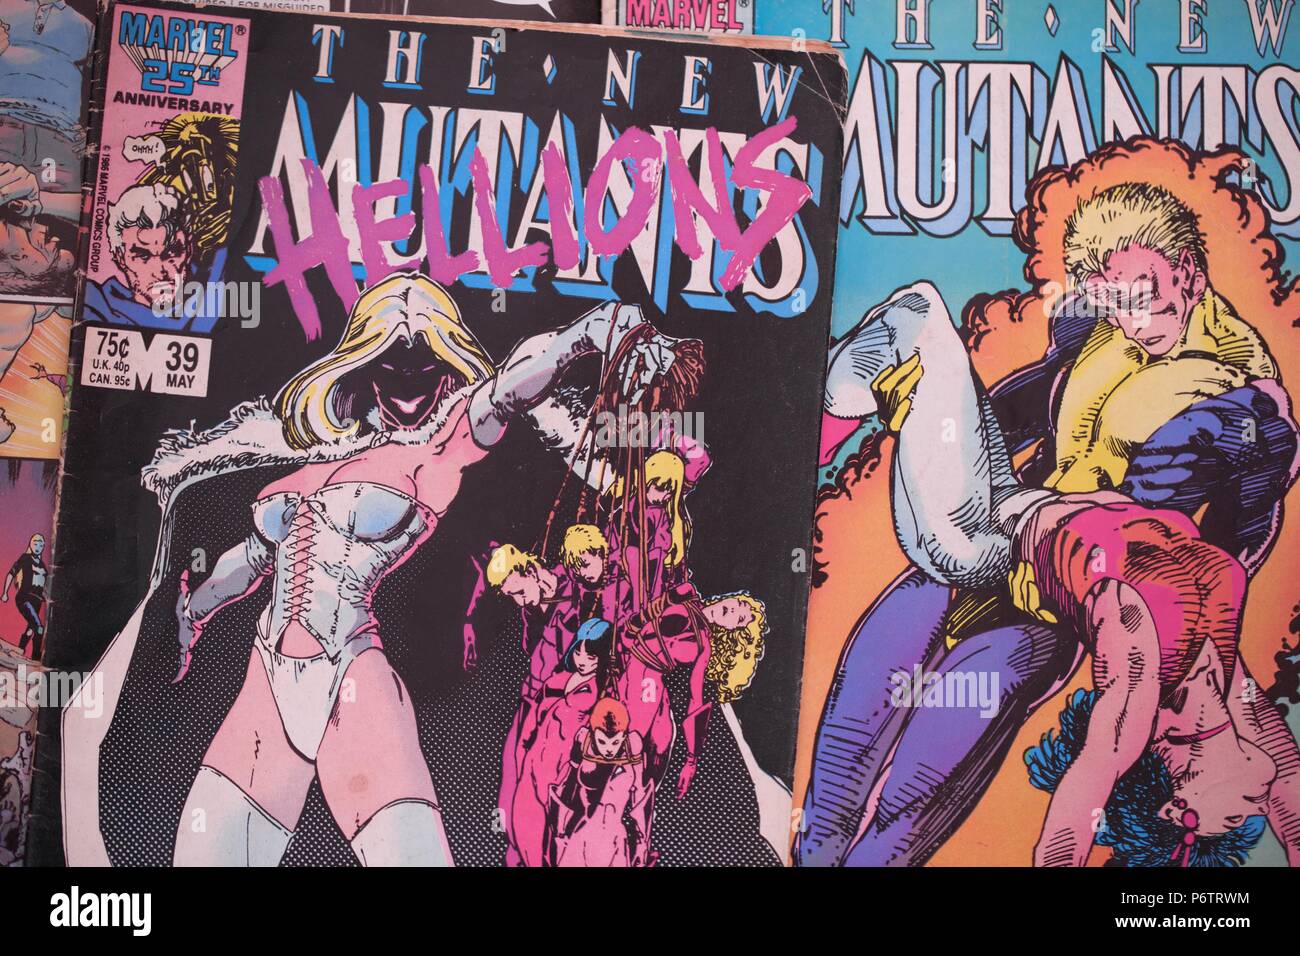 The New Mutants  Comic-Con@Home 2020 